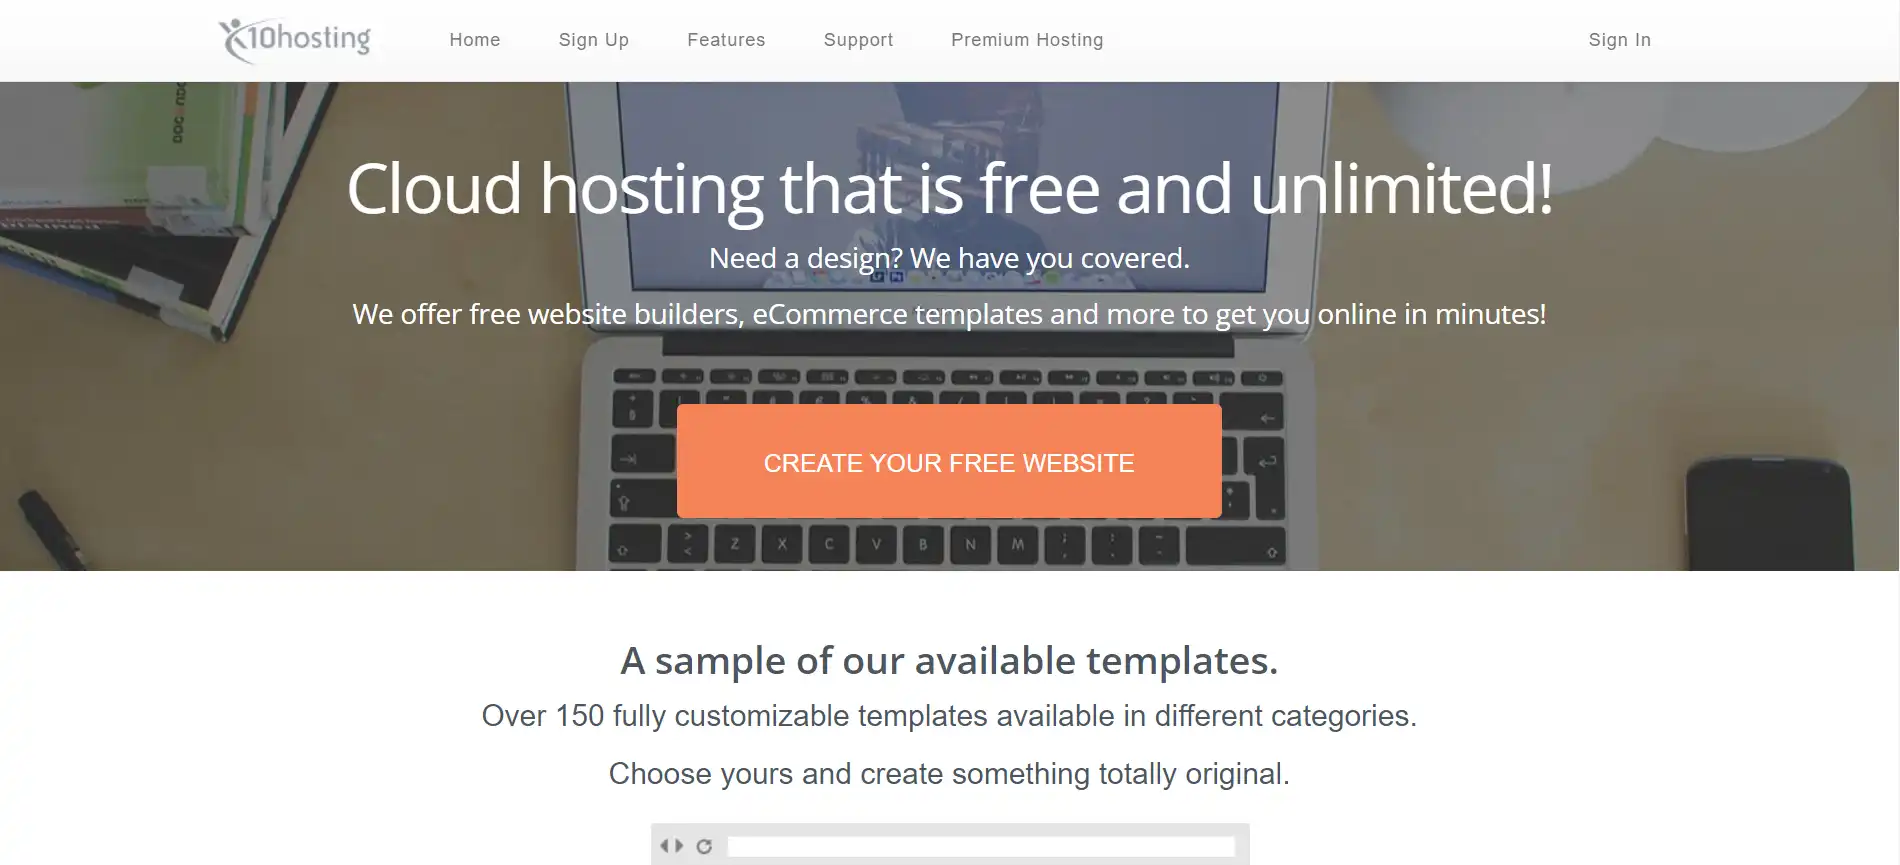 free website hosting x10hosting.com